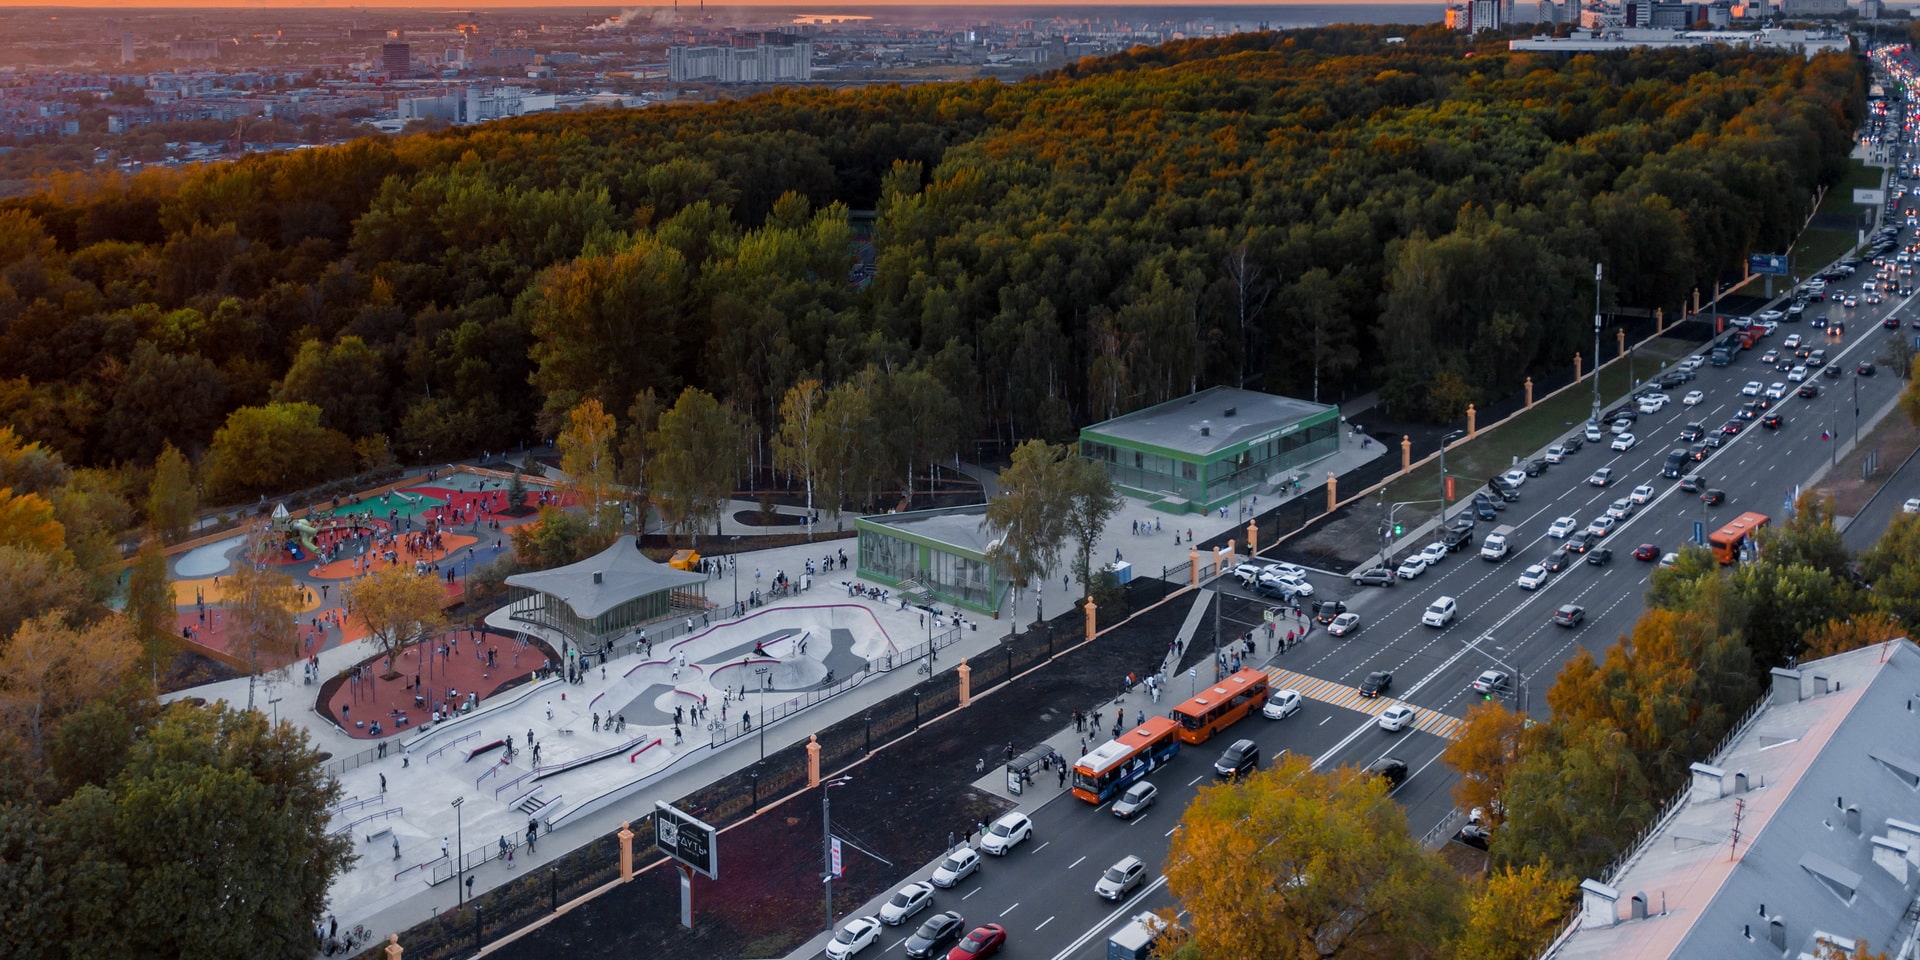 Изменение маршрутов общественного транспорта в нижнем новгороде в сормовском районе